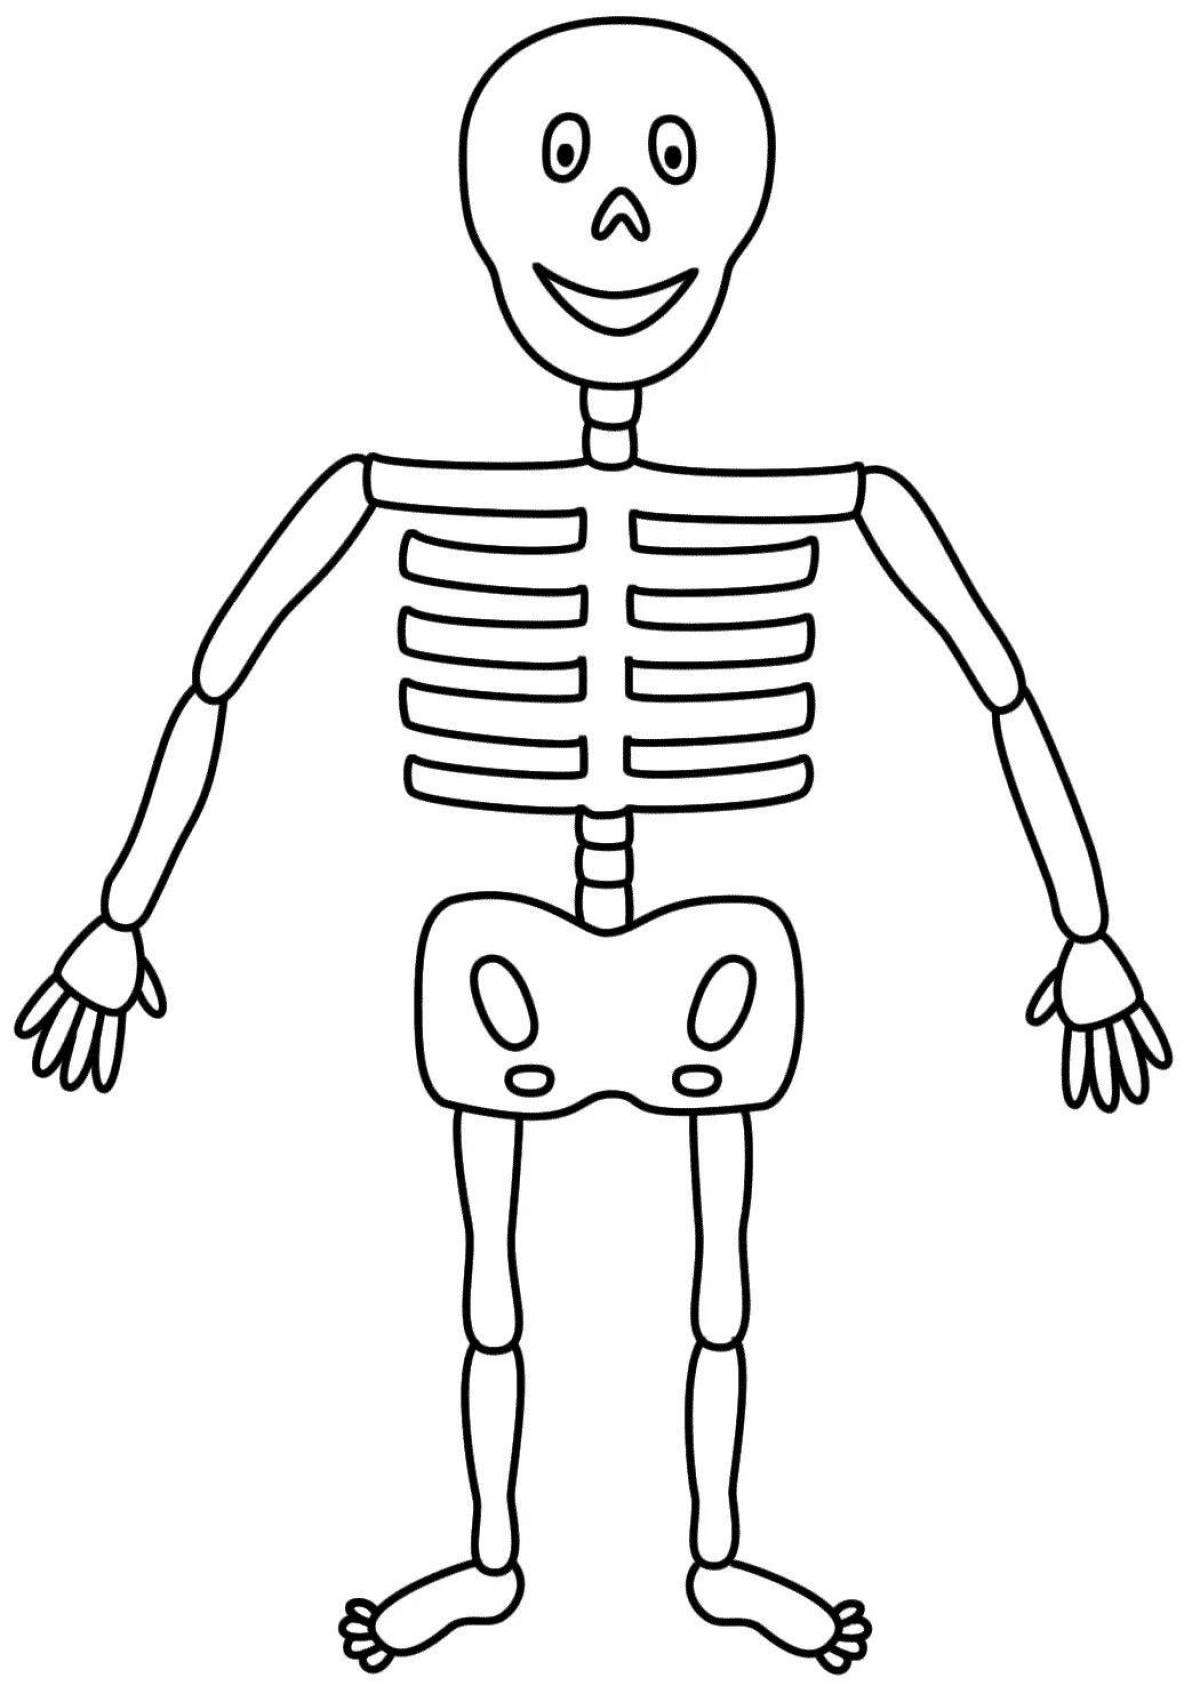 Раскраска Скелет человека | Раскраски для детей печать онлайн